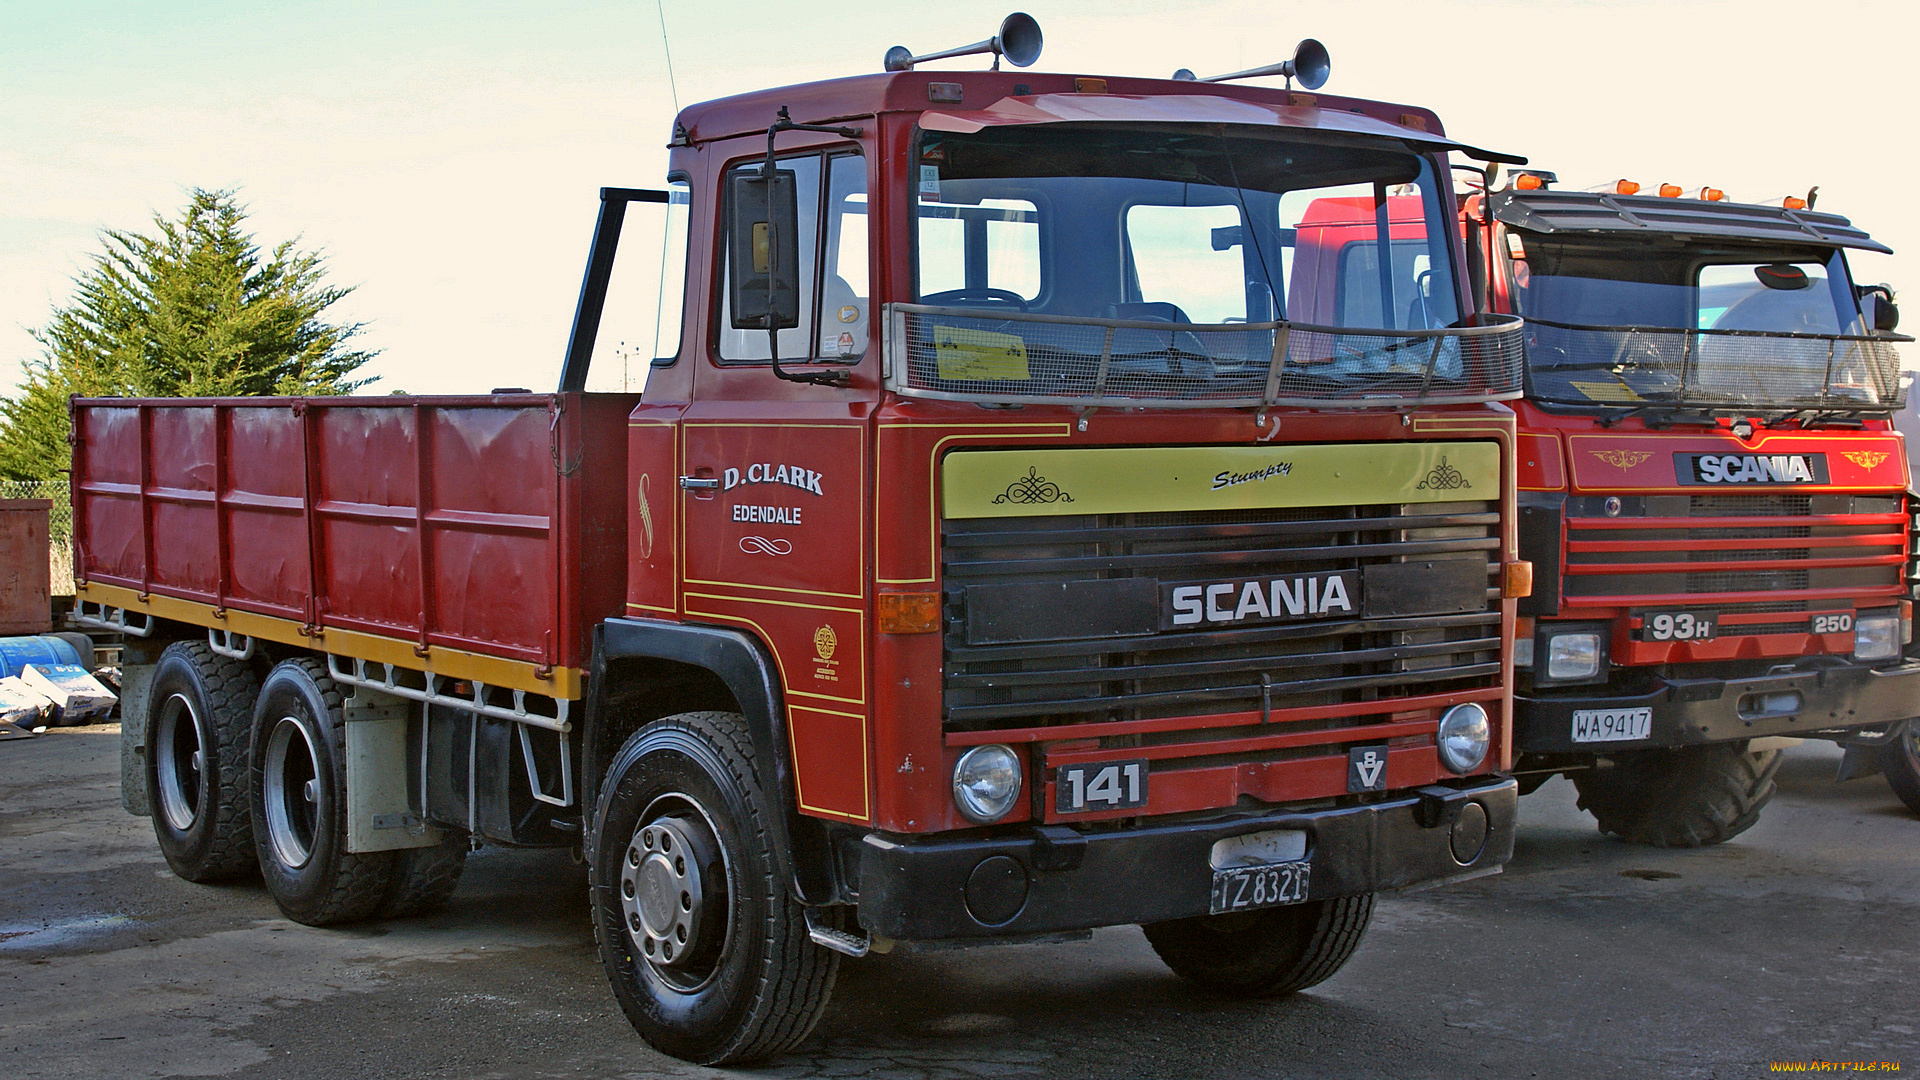 1979, scania, lbt, truck, автомобили, scania, дизельные, двигатели, швеция, автобусы, судовые, ab, грузовые